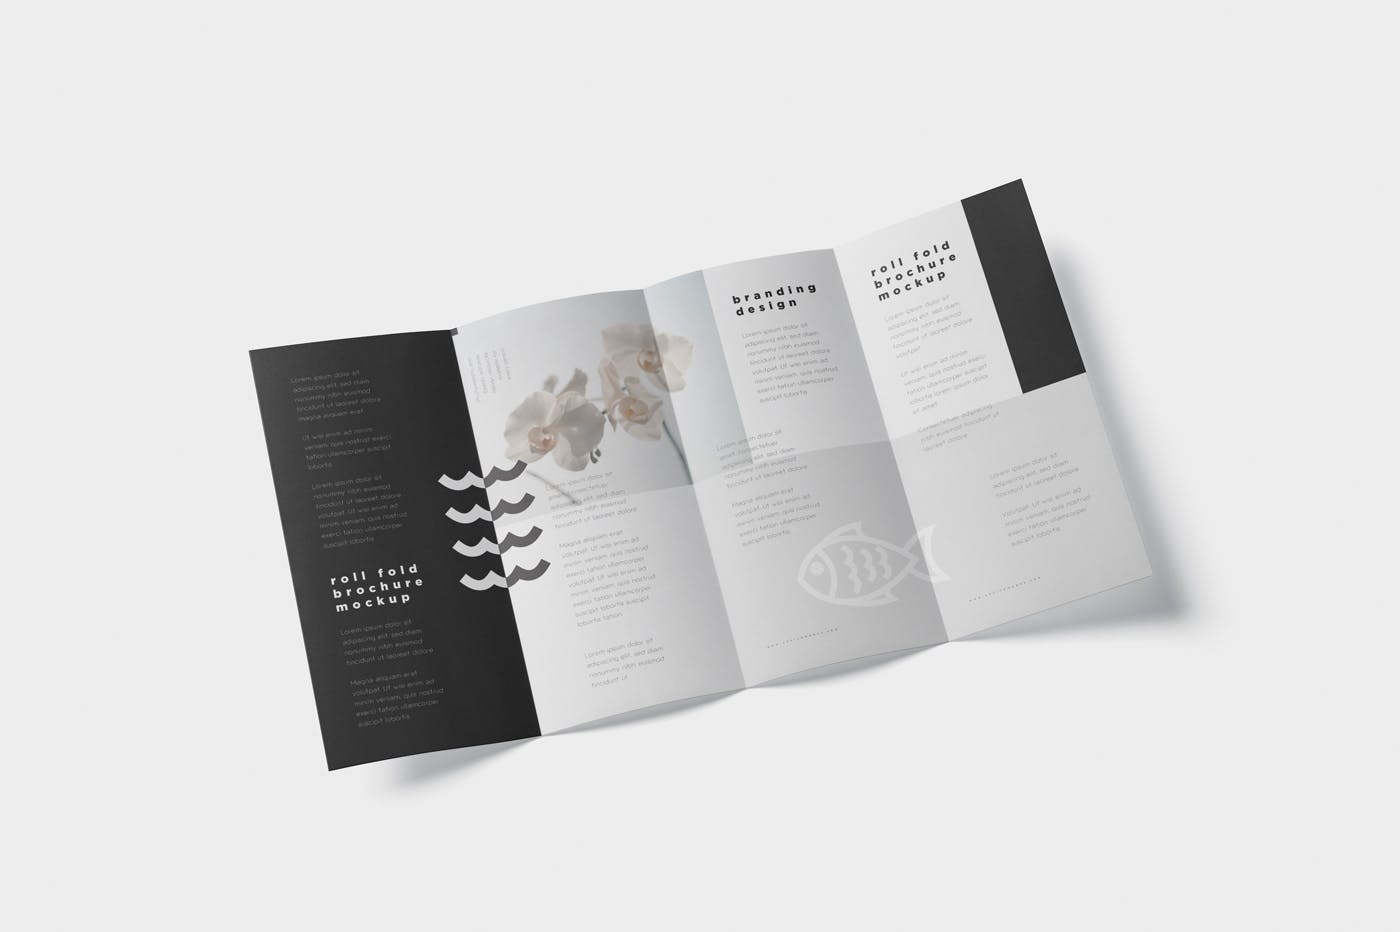 折叠设计风格企业传单/宣传册设计样机非凡图库精选 Roll-Fold Brochure Mockup – DL DIN Lang Size插图(2)